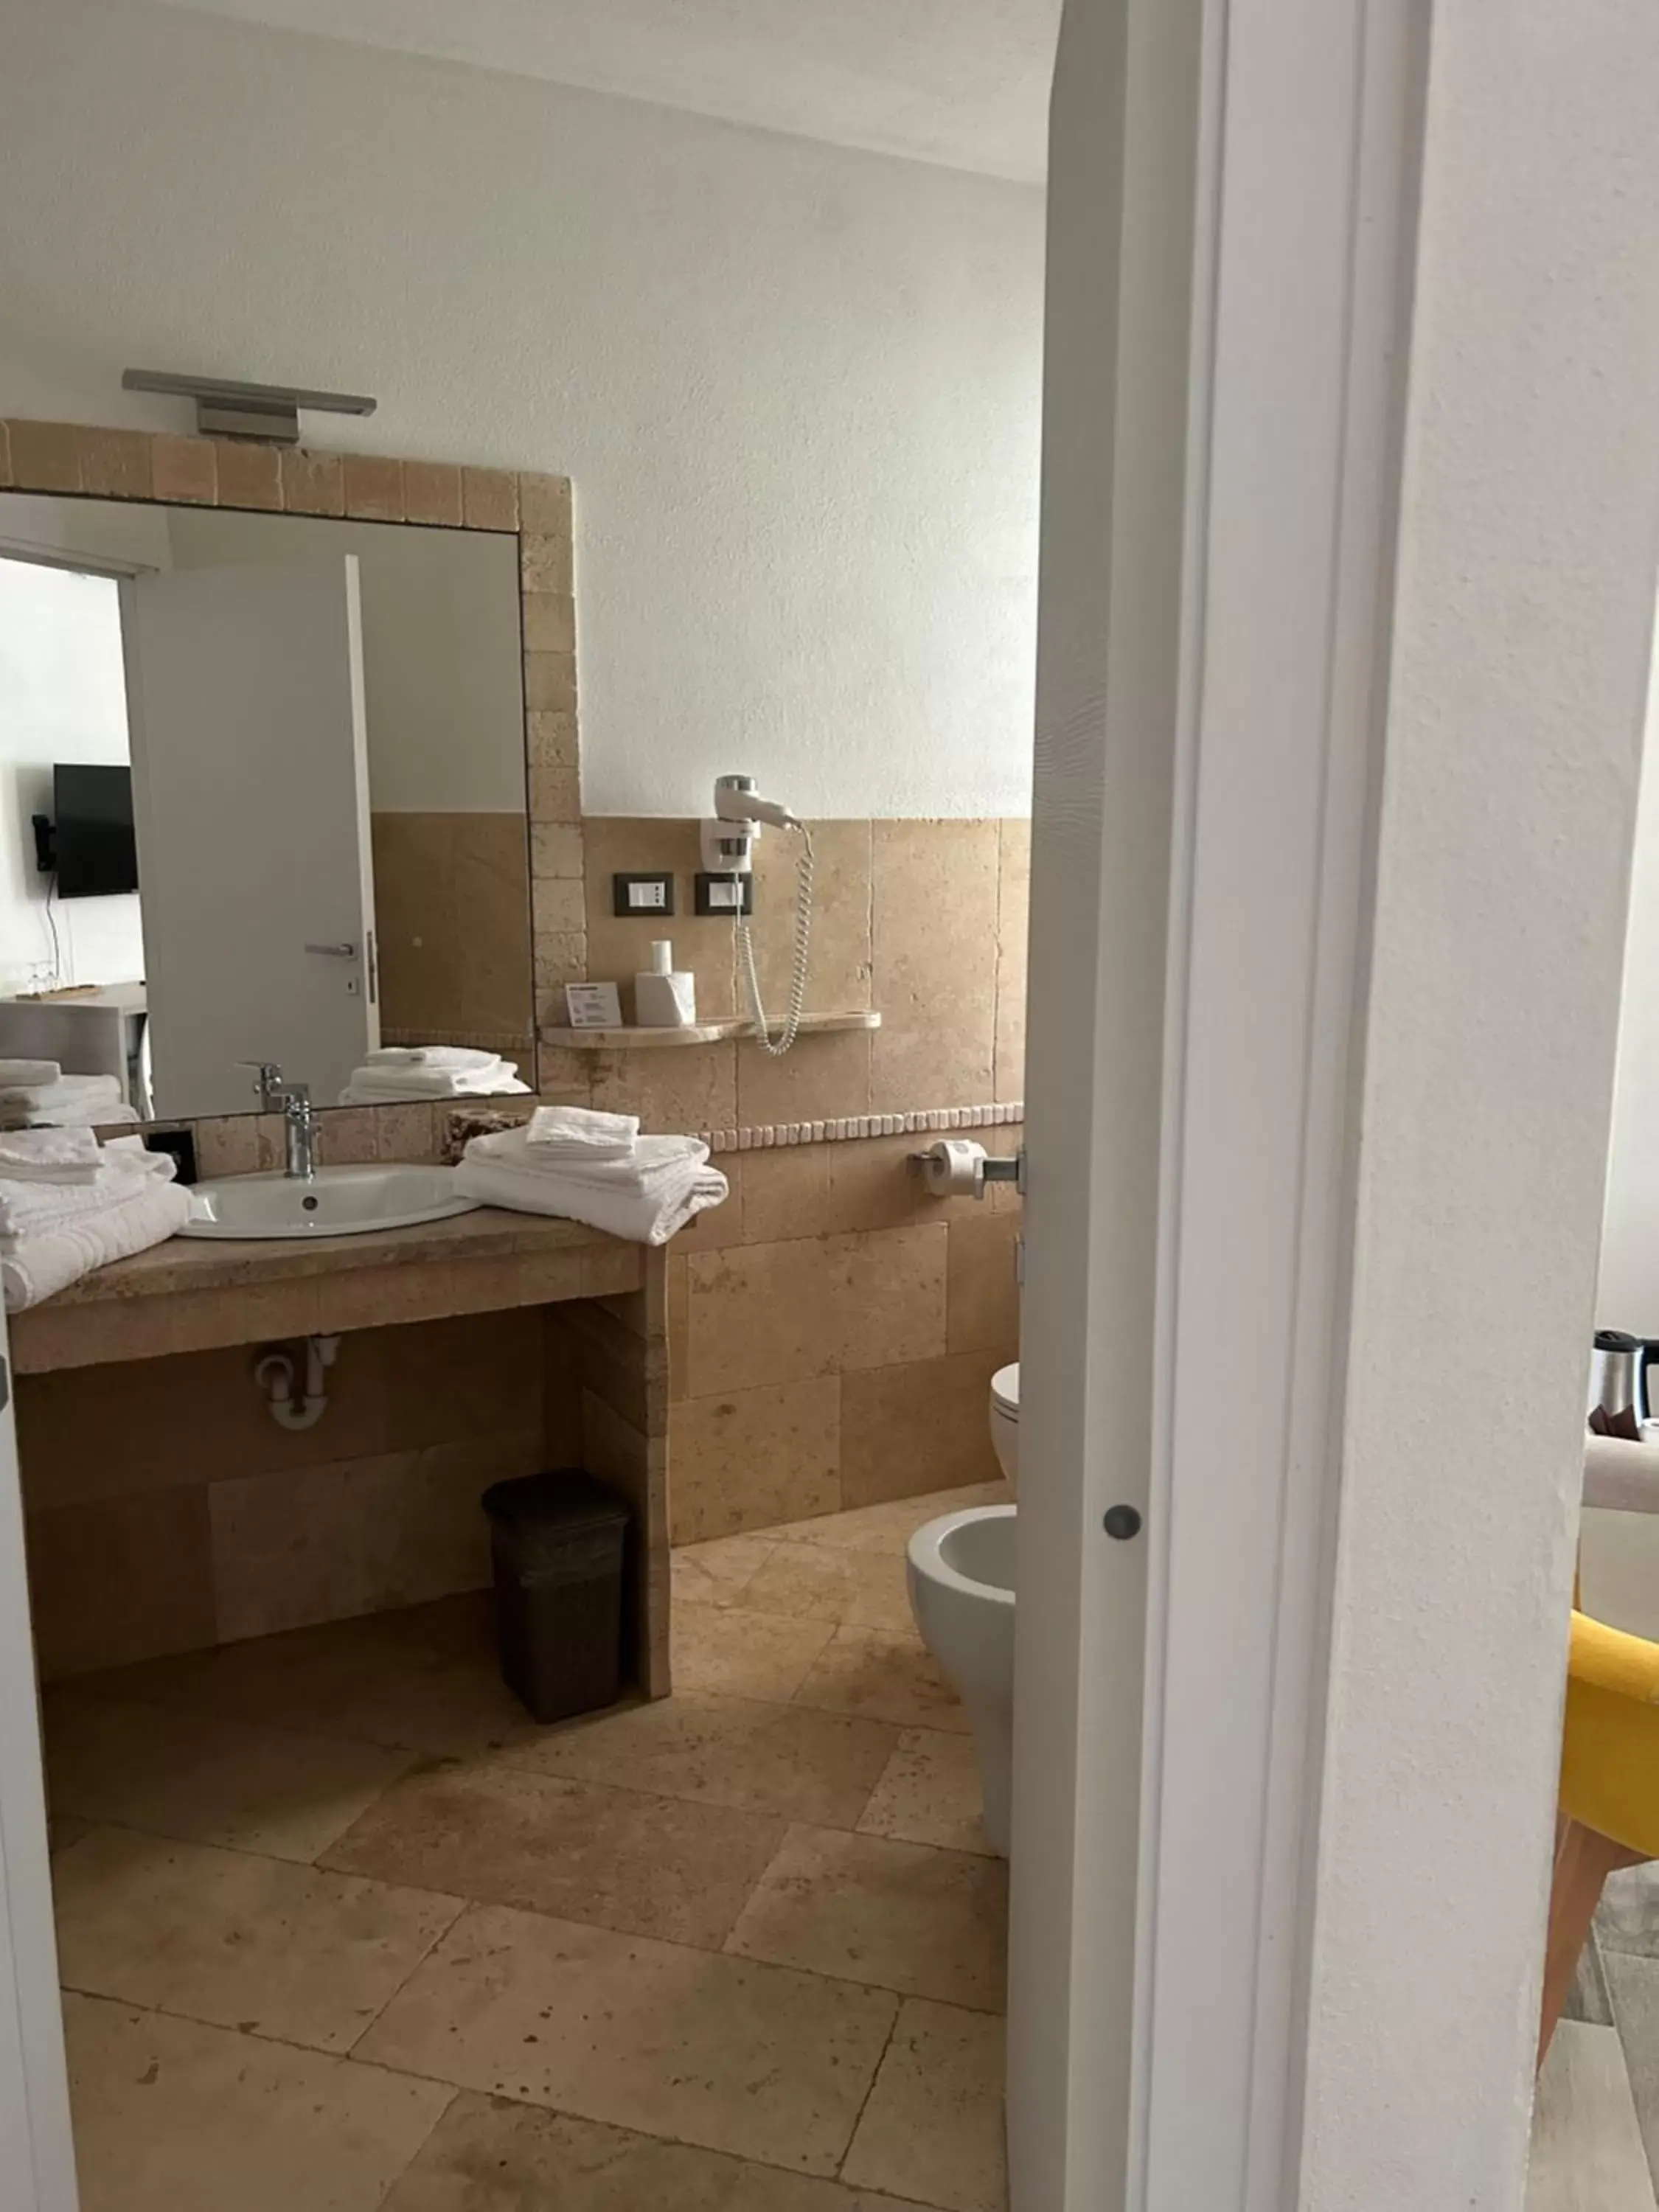 Bathroom in Regia Hotel